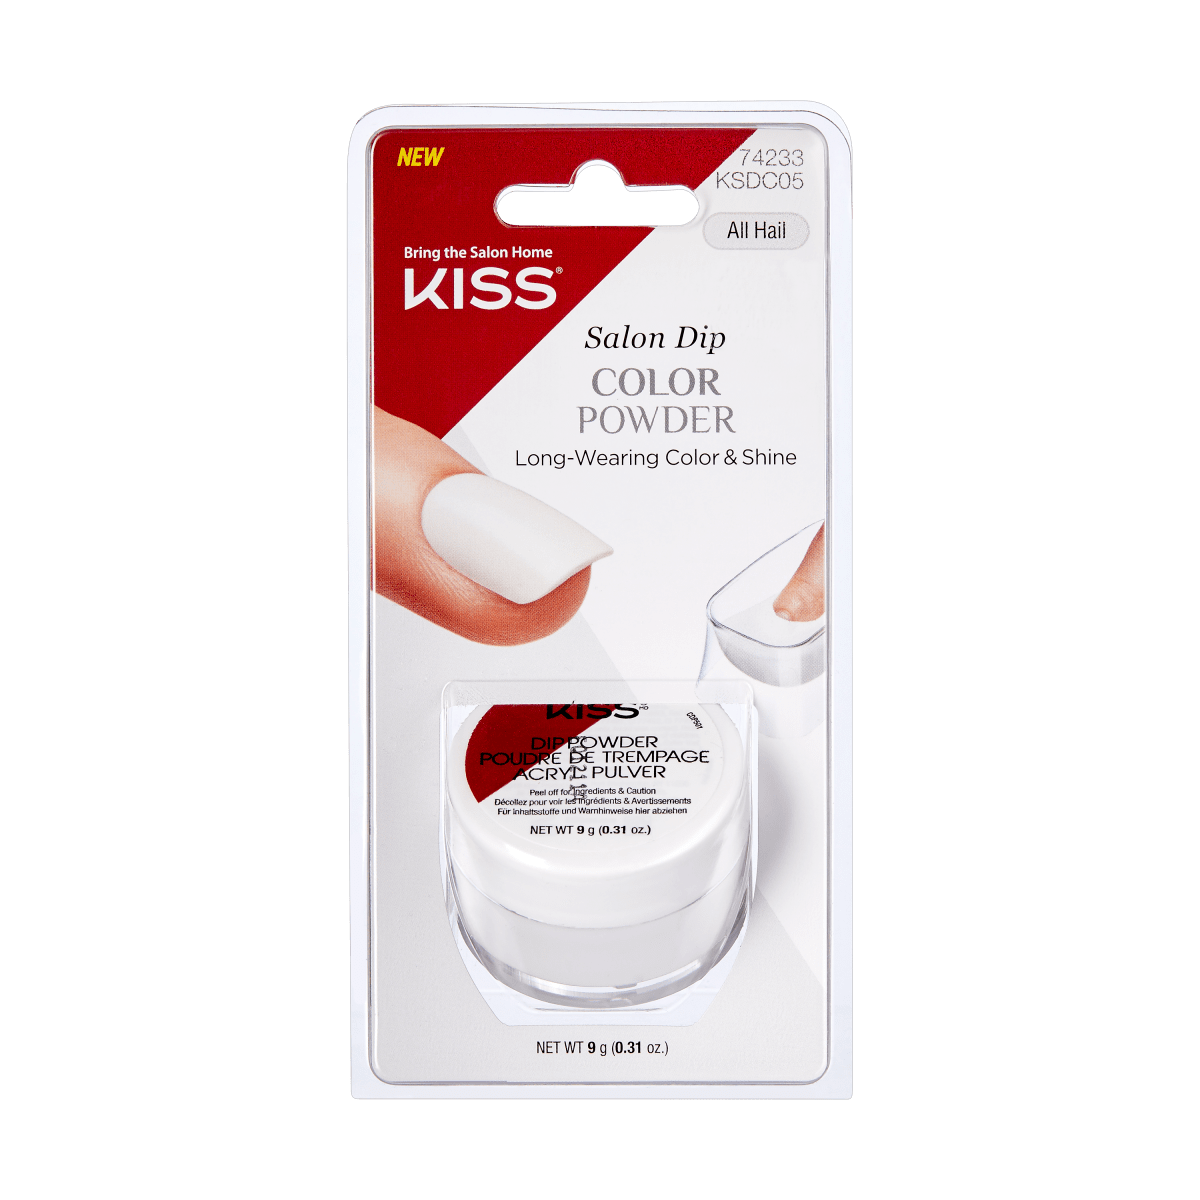 KISS Salon Dip Color Powder - All Hail